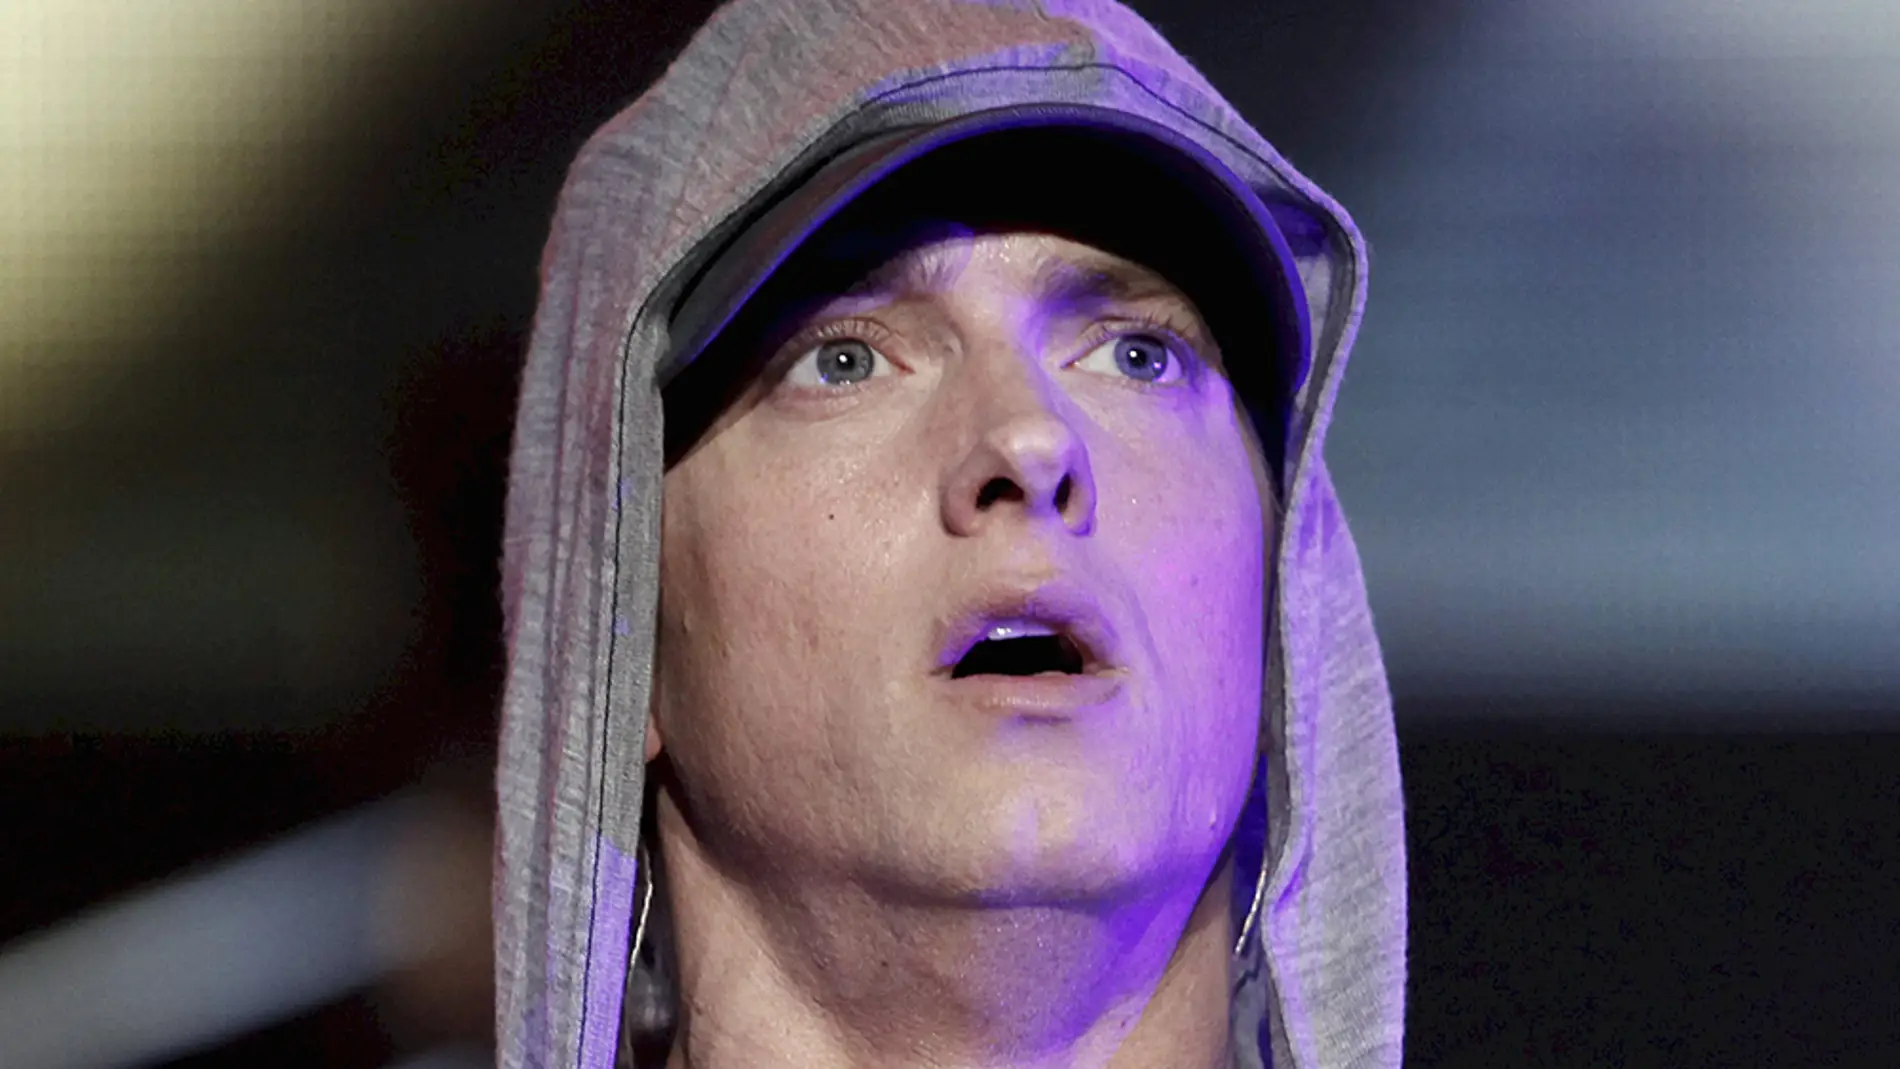 El cantante y actor Eminem